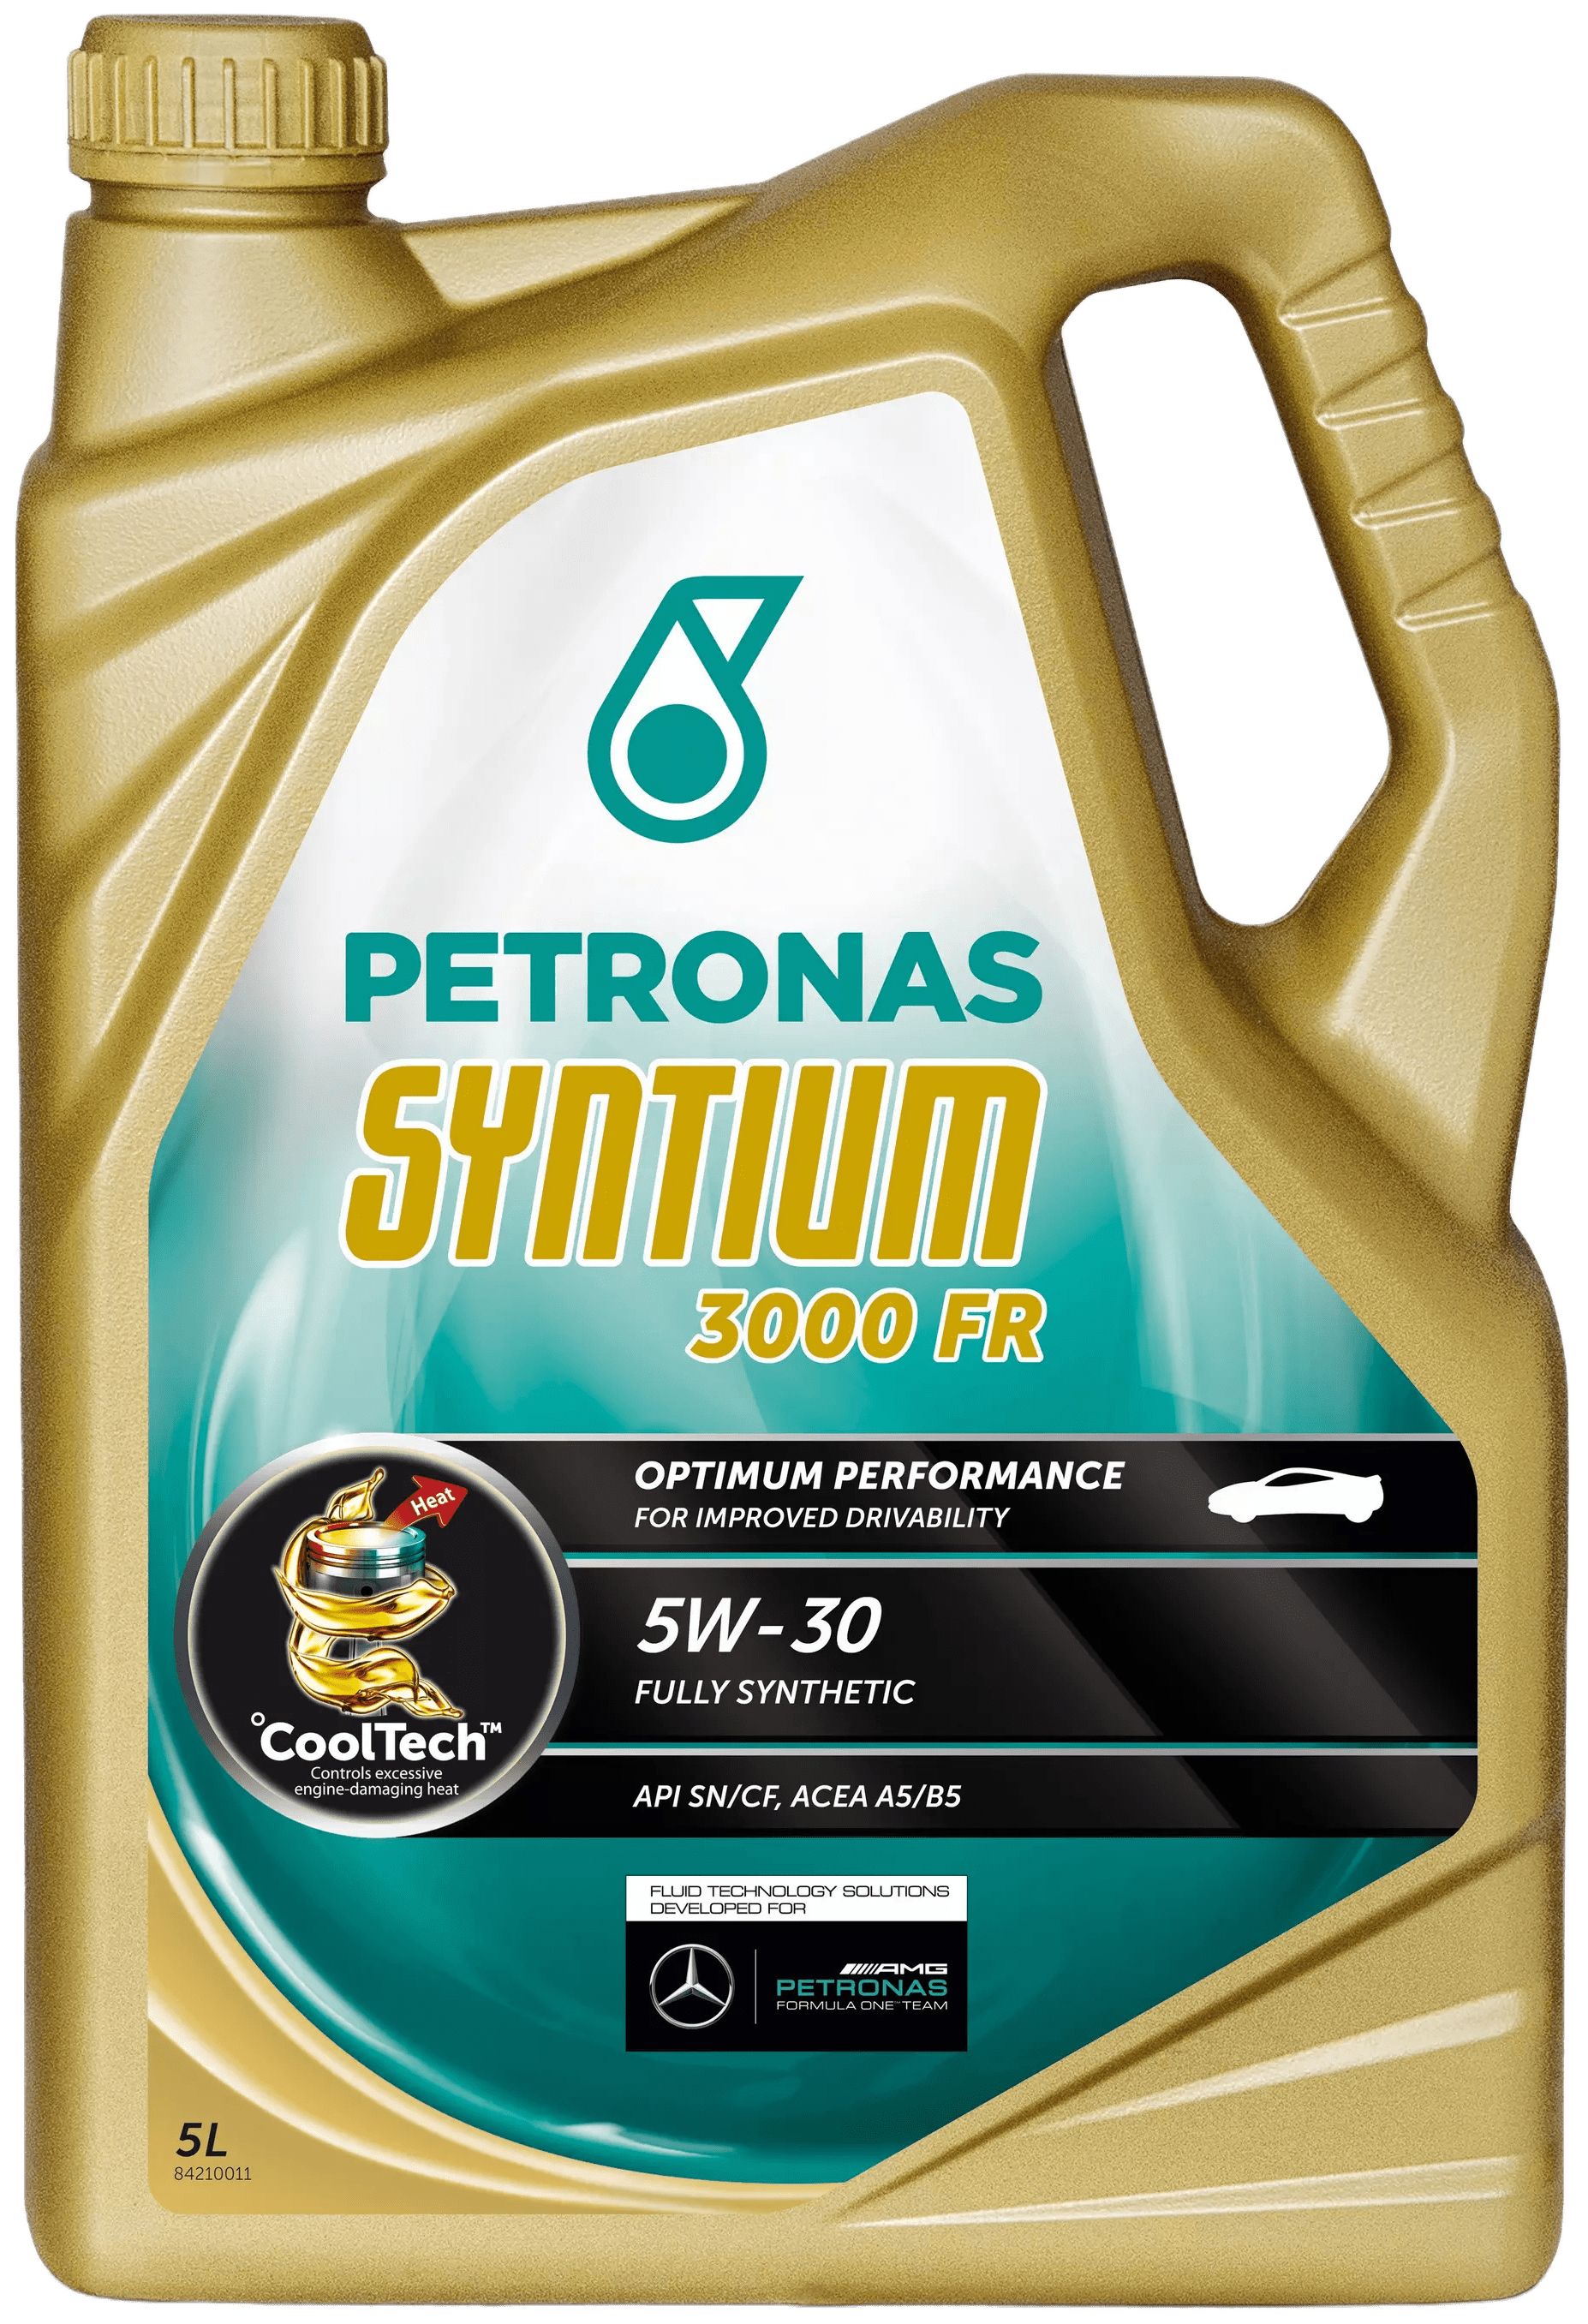 Petronas Syntium 3000 FR 5W-30, 5 lt